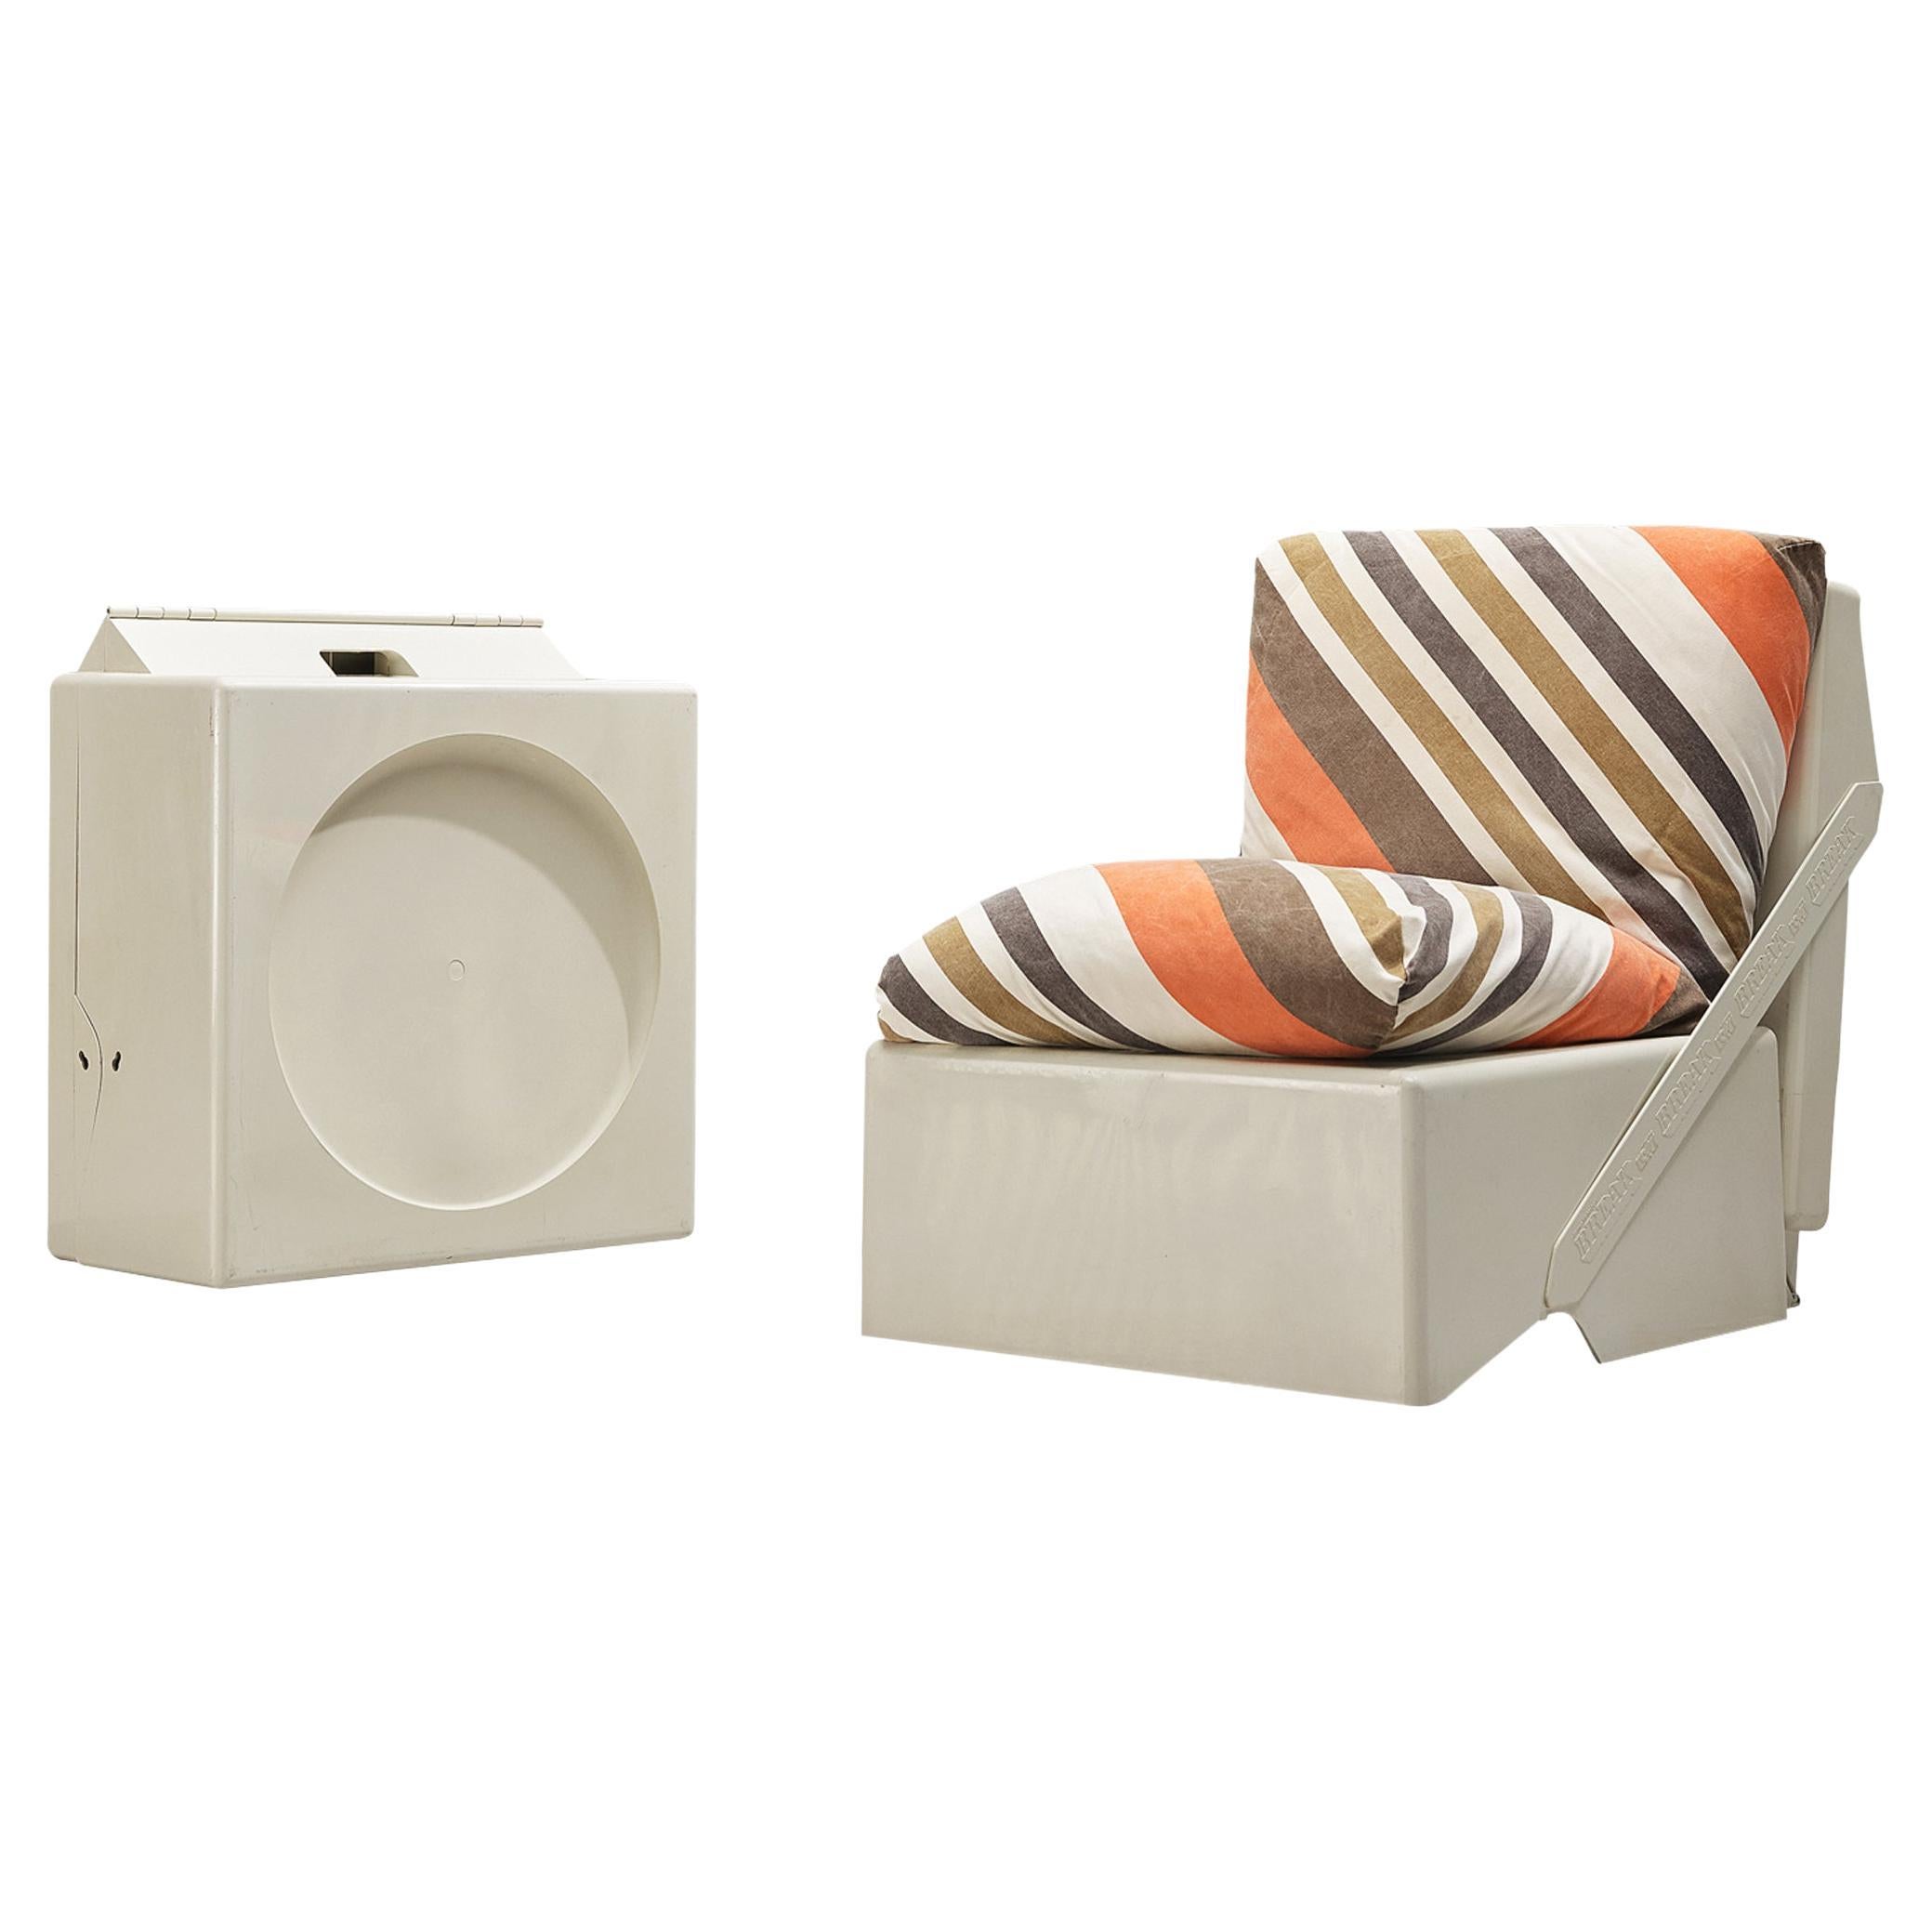 Aldo Barberi for Rossi di Albizzate ‘Break’ Portable Folding Lounge Chairs For Sale